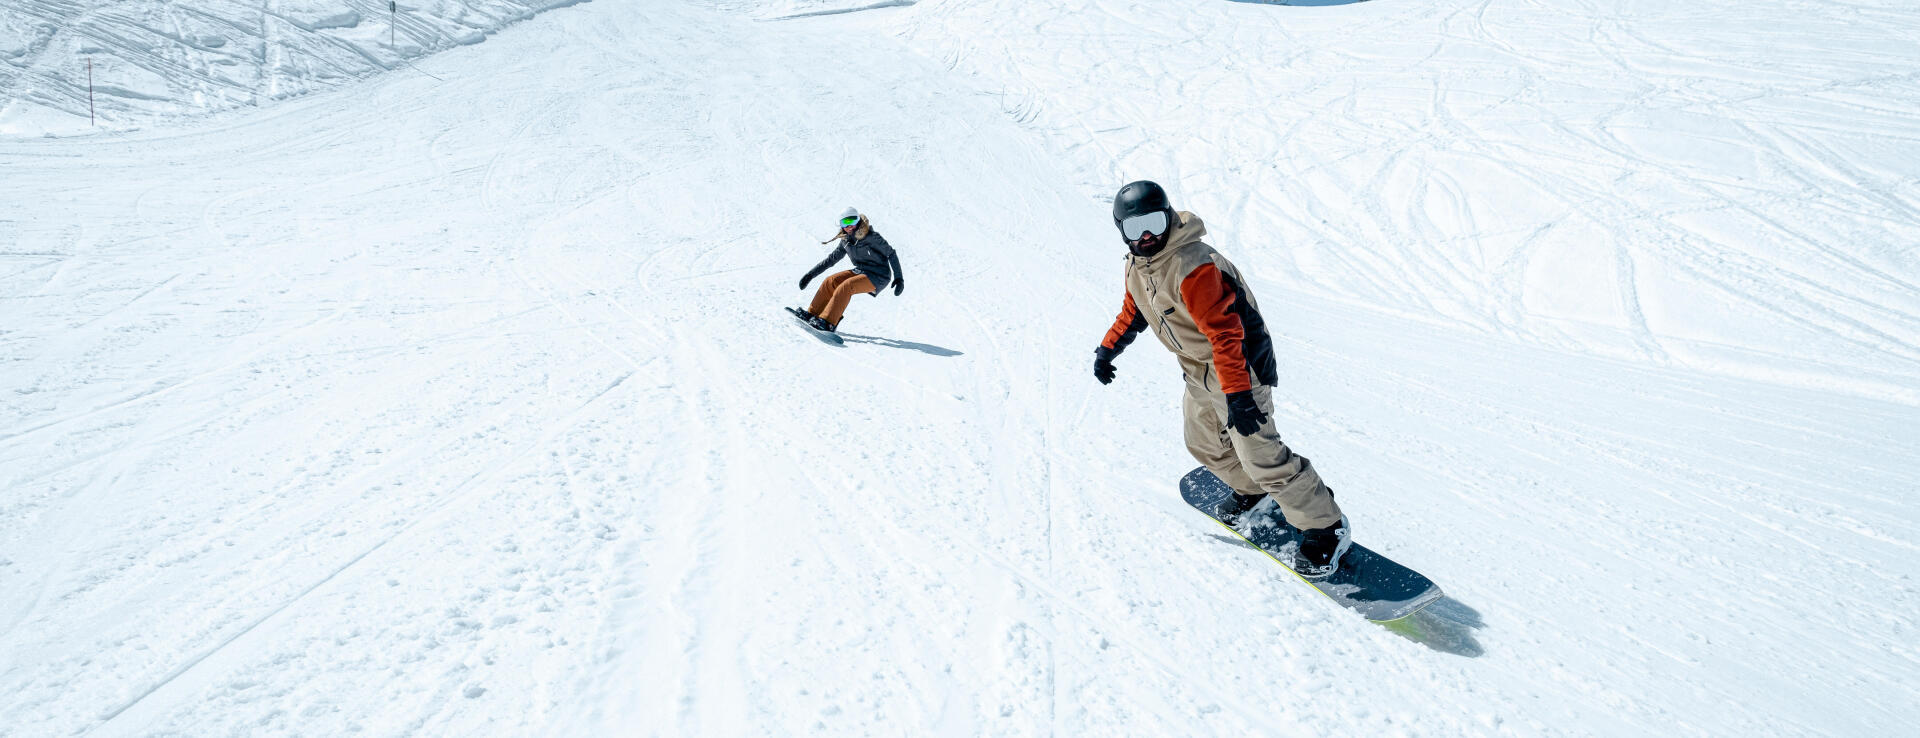 snowboard goofy ou regular - titre